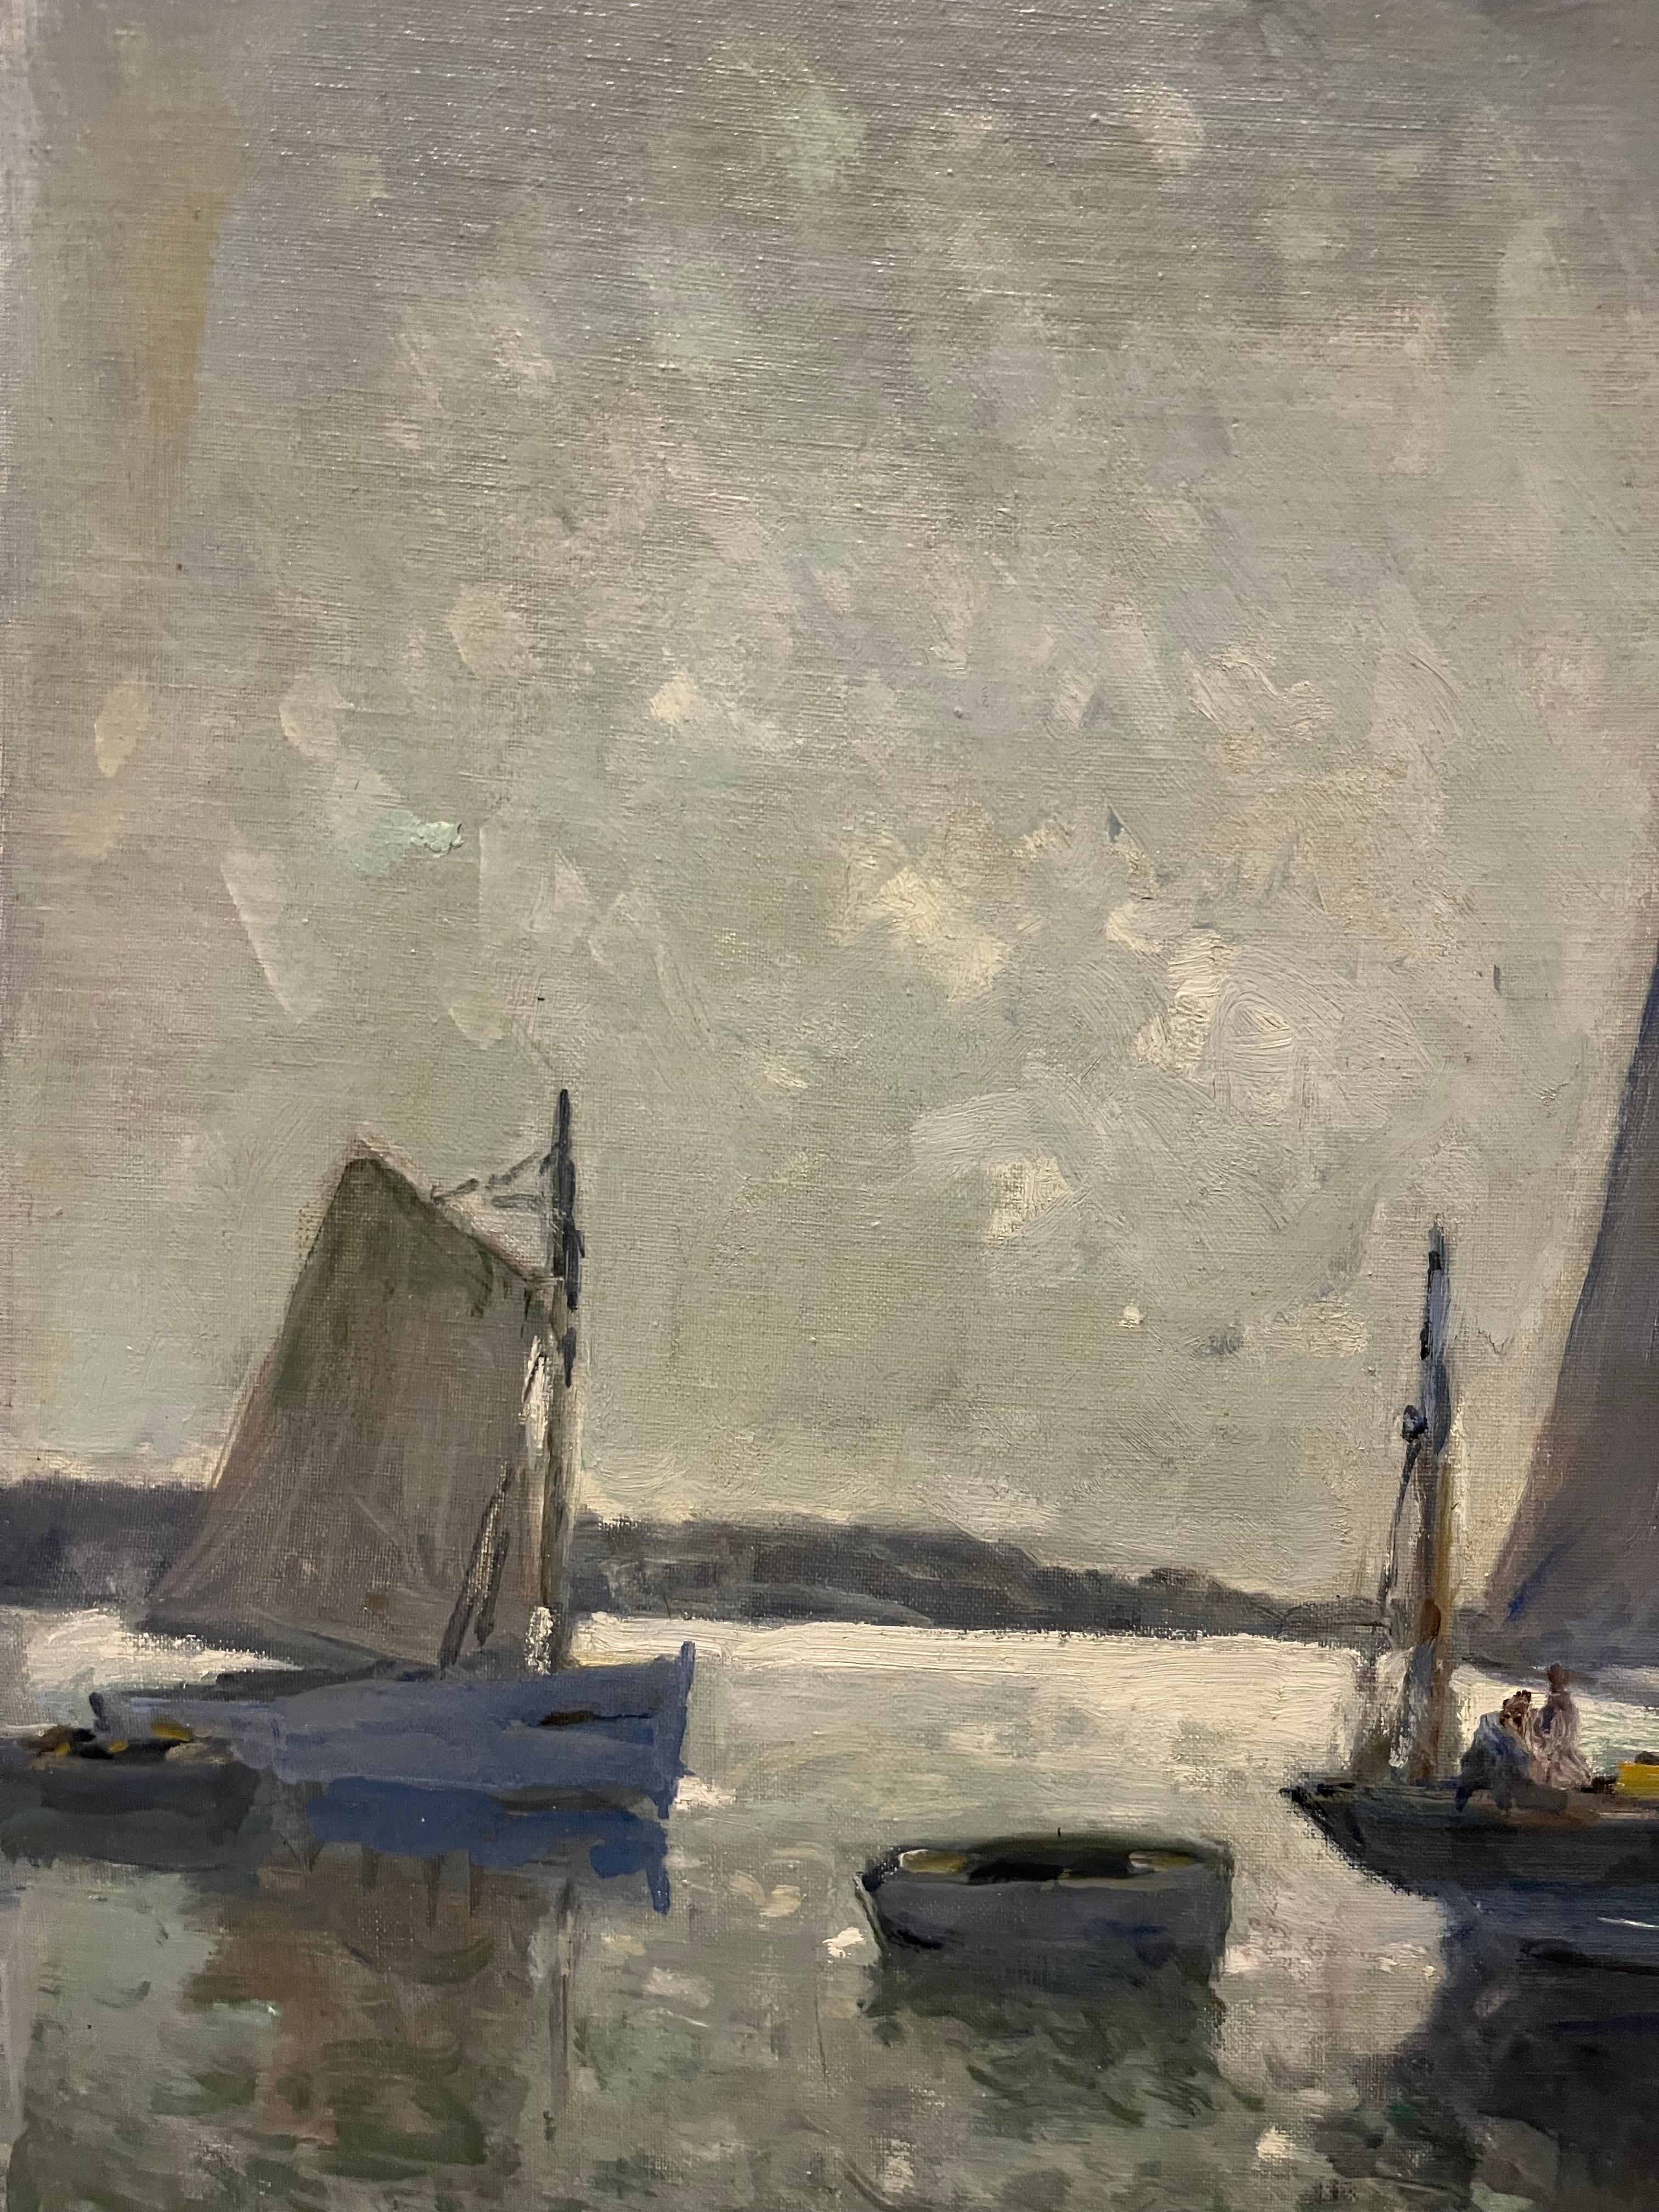 Segelboote, Meer, Frankreich, grau, blau, azurblau, Landschaft Frankreich
Henry Maurice CAHOURS (Paris, 1889 -  Vence, 1974)

Er wurde in Paris geboren, verbrachte aber seine Kindheit und Jugend in Amiens, wo er die Akademie der Schönen Künste